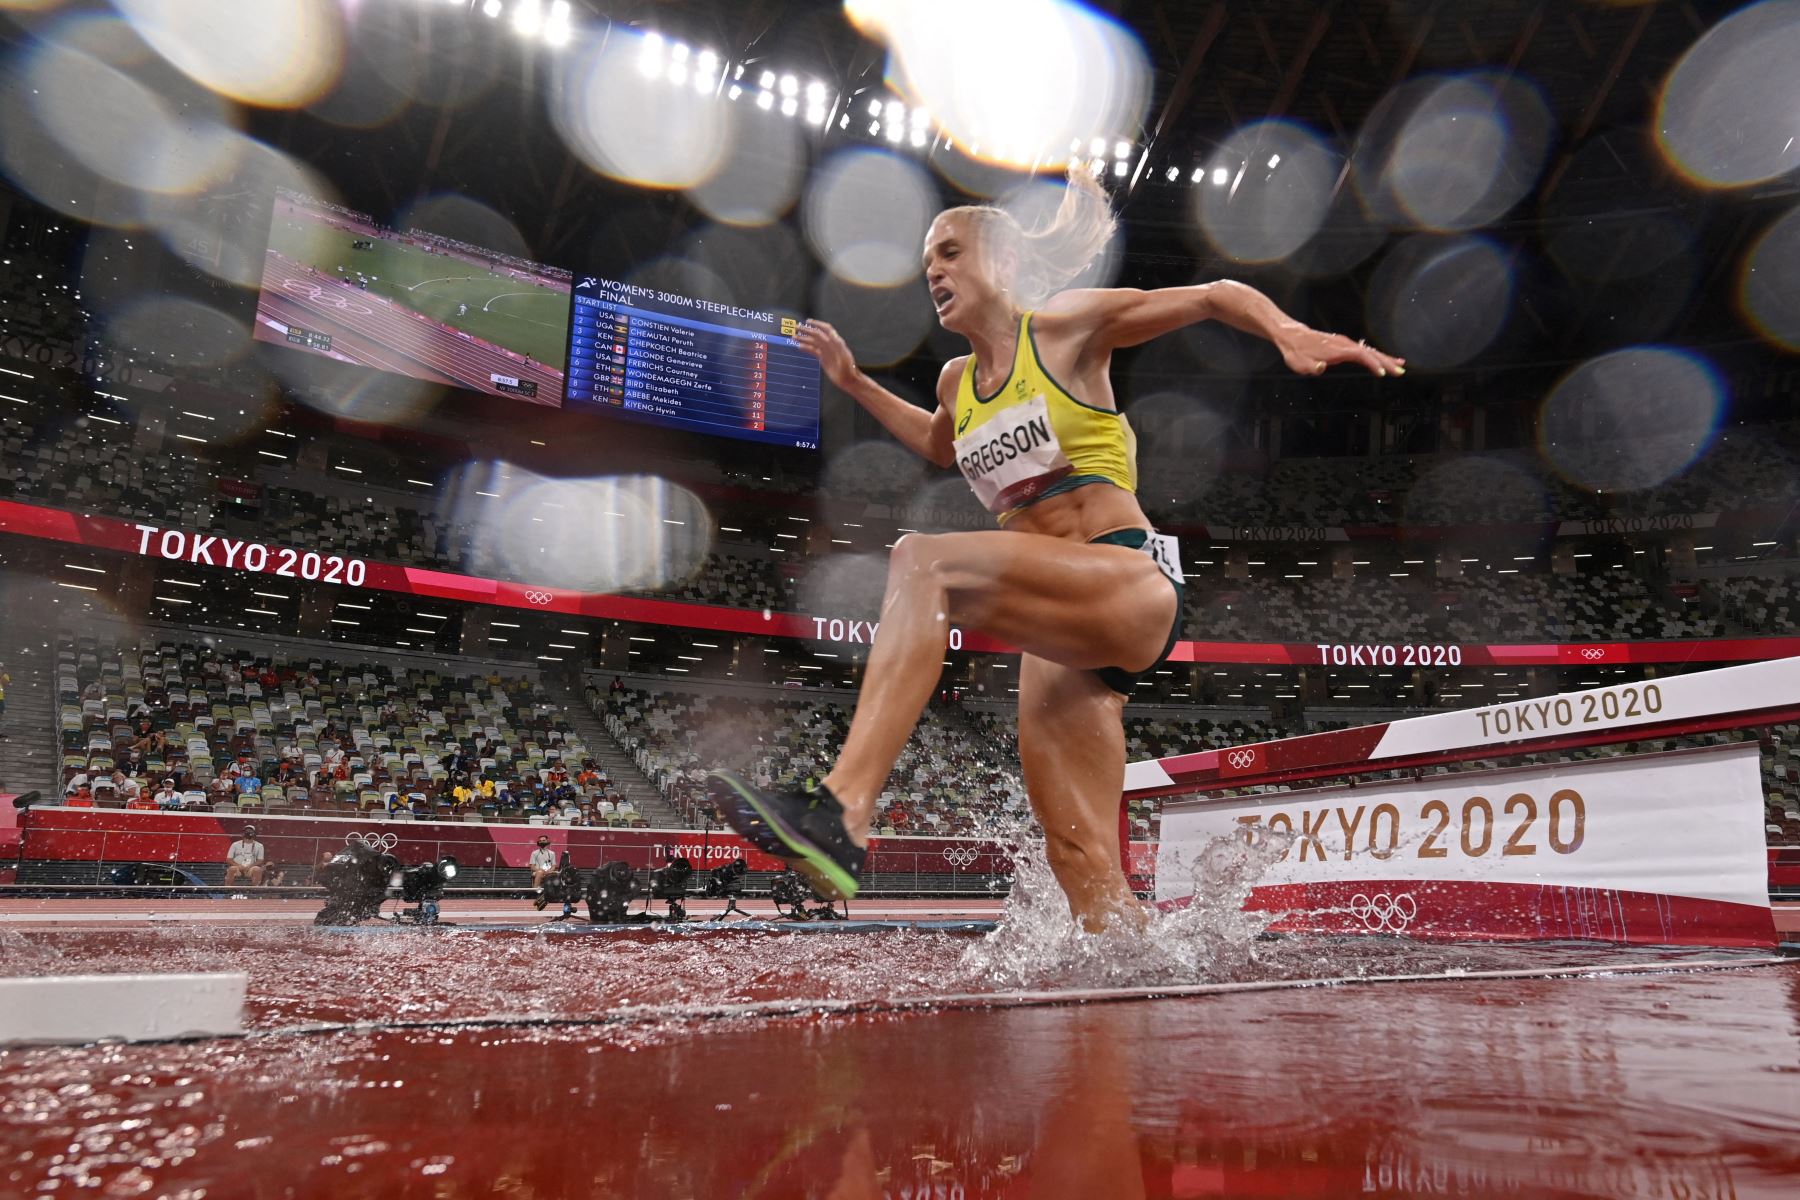 La australiana Genevieve Gregson se lesiona durante la final femenina de carrera de obstáculos de 3000 m durante los Juegos Olímpicos de Tokio 2020.
Foto: AFP